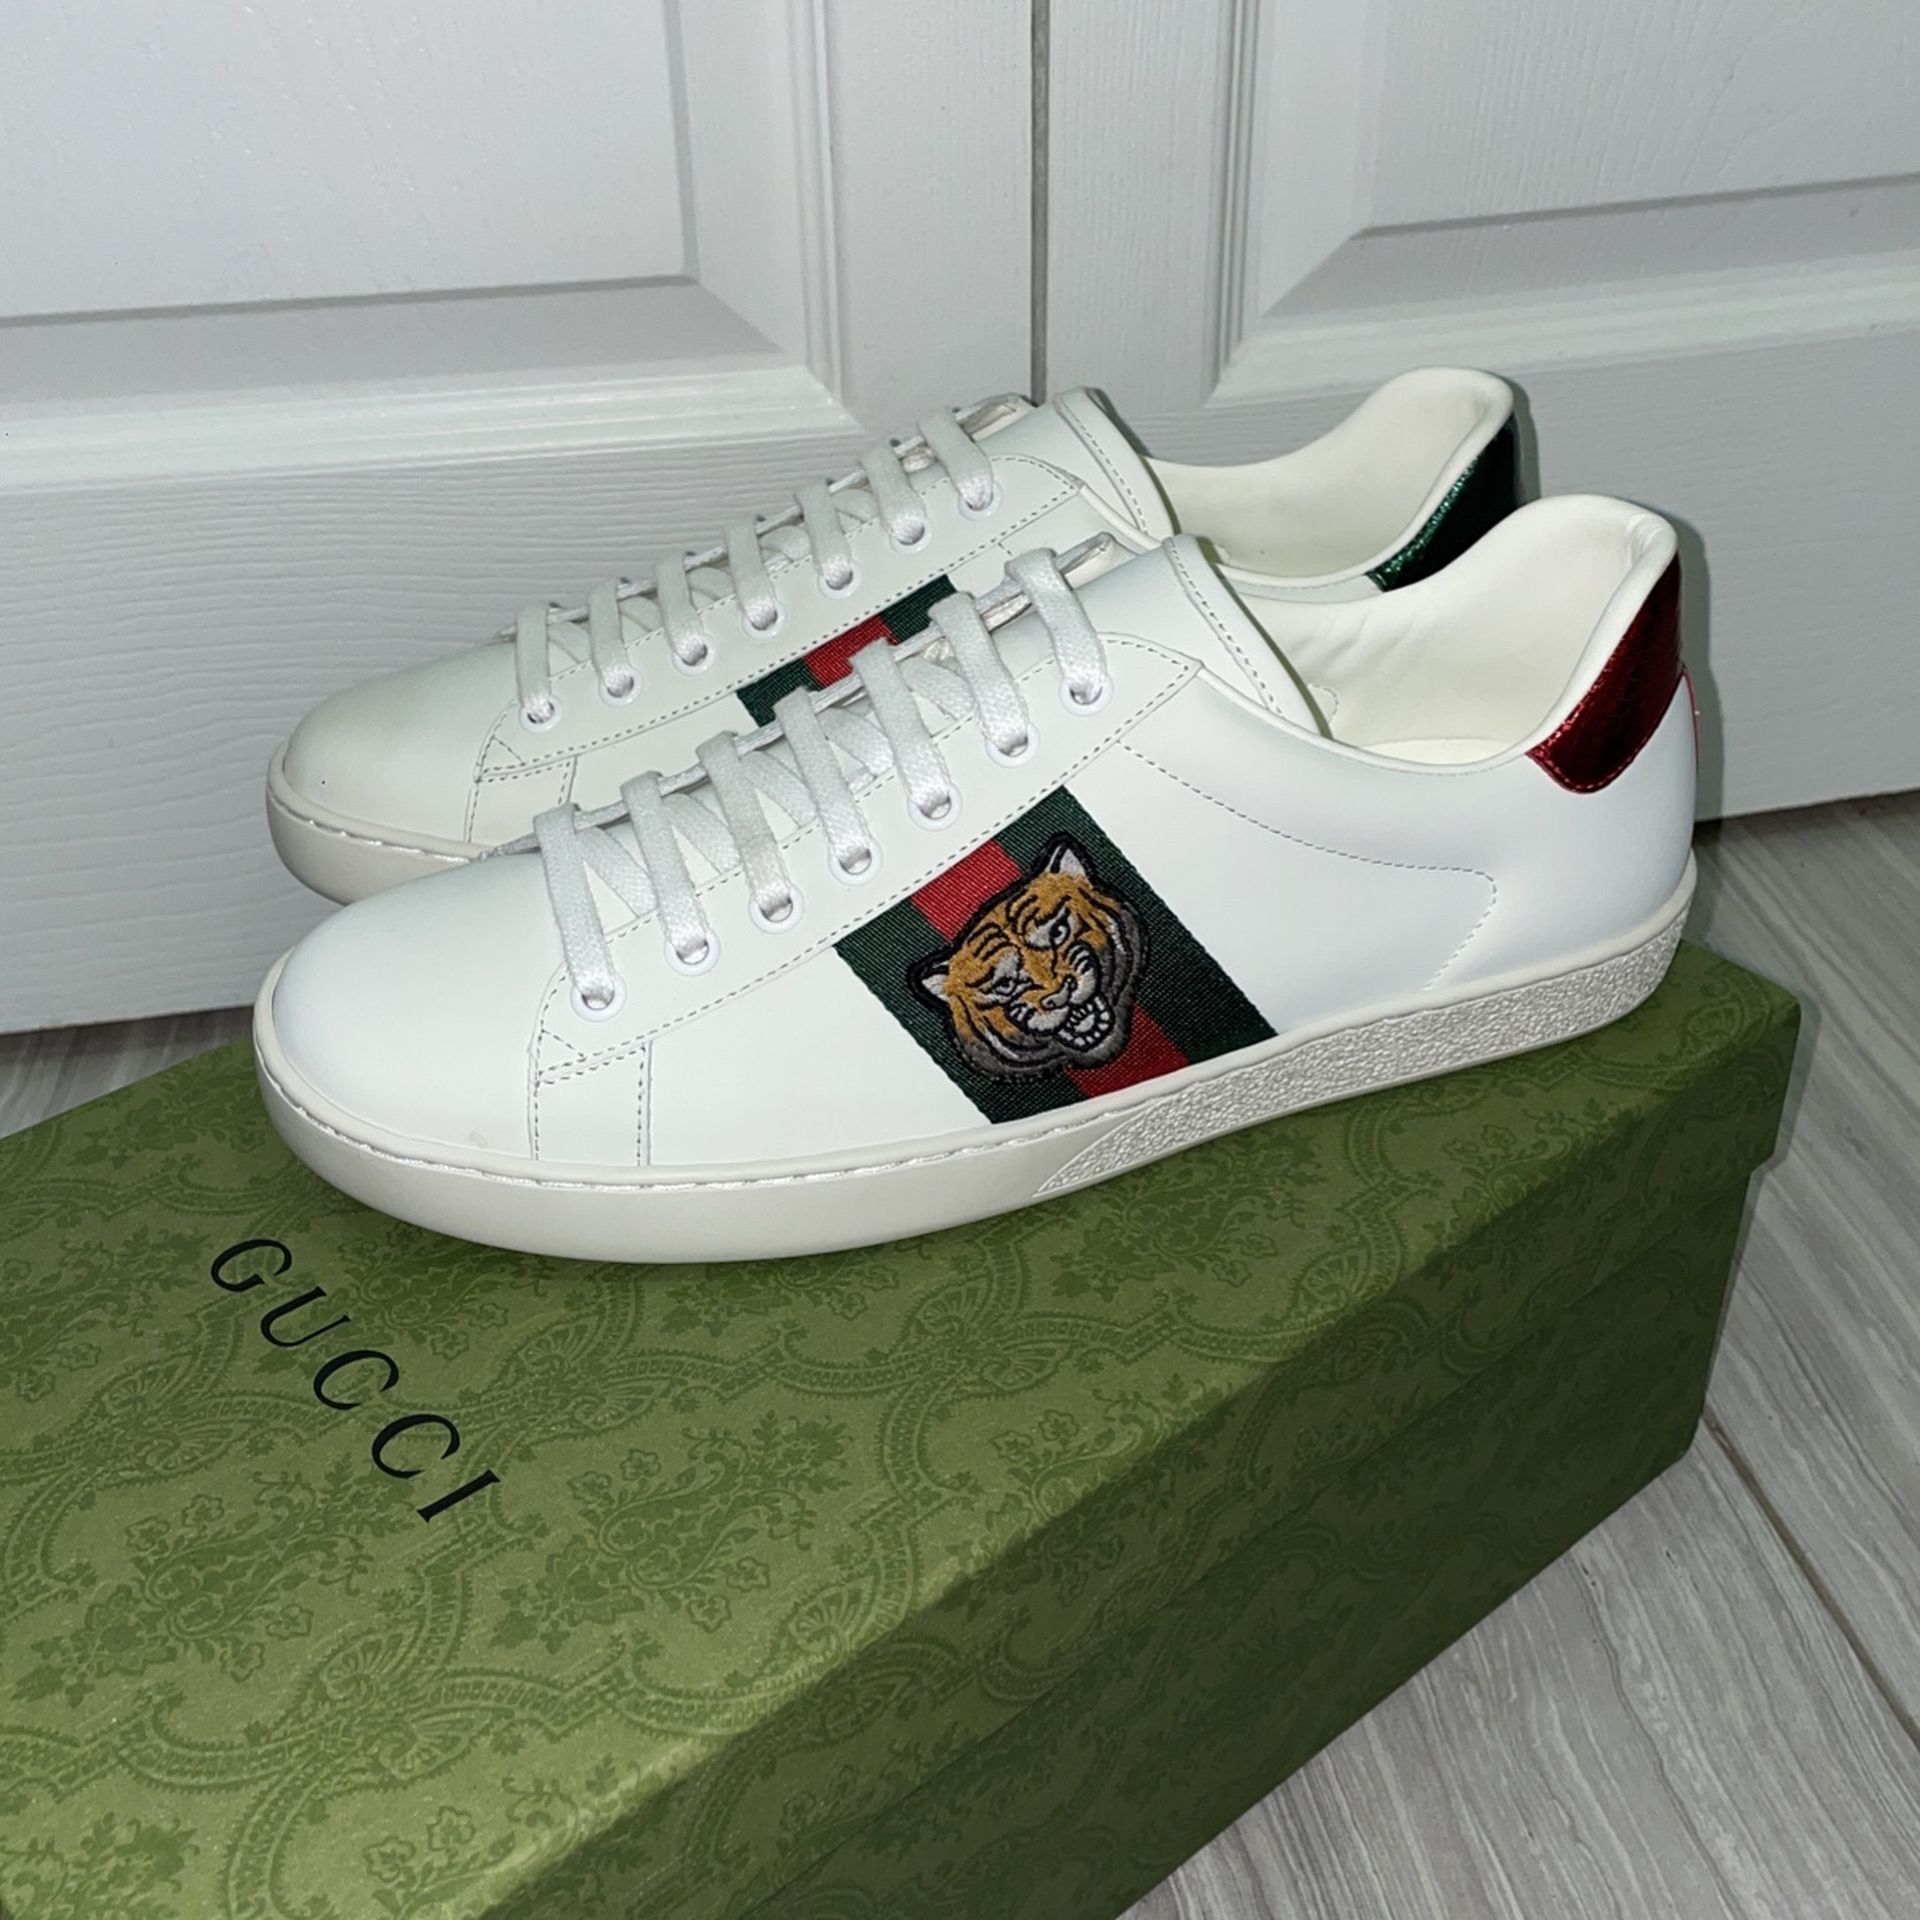 Voorverkoop Gaan moederlijk Gucci Men's Ace Sneakers Size 43 (US 10) for Sale in Philadelphia, PA -  OfferUp